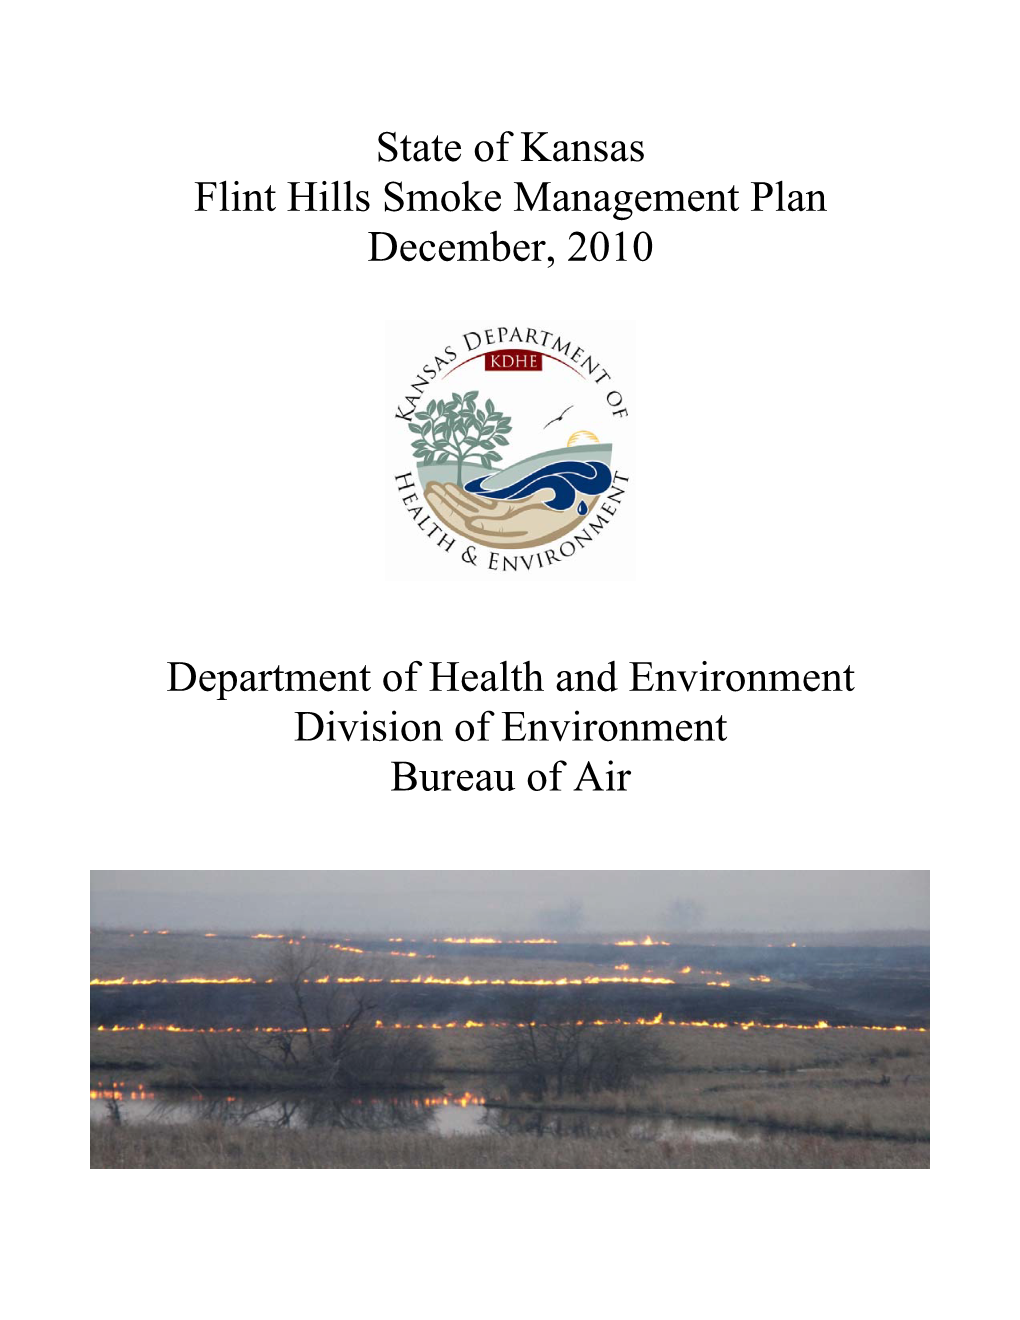 State of Kansas Flint Hills Smoke Management Plan December, 2010